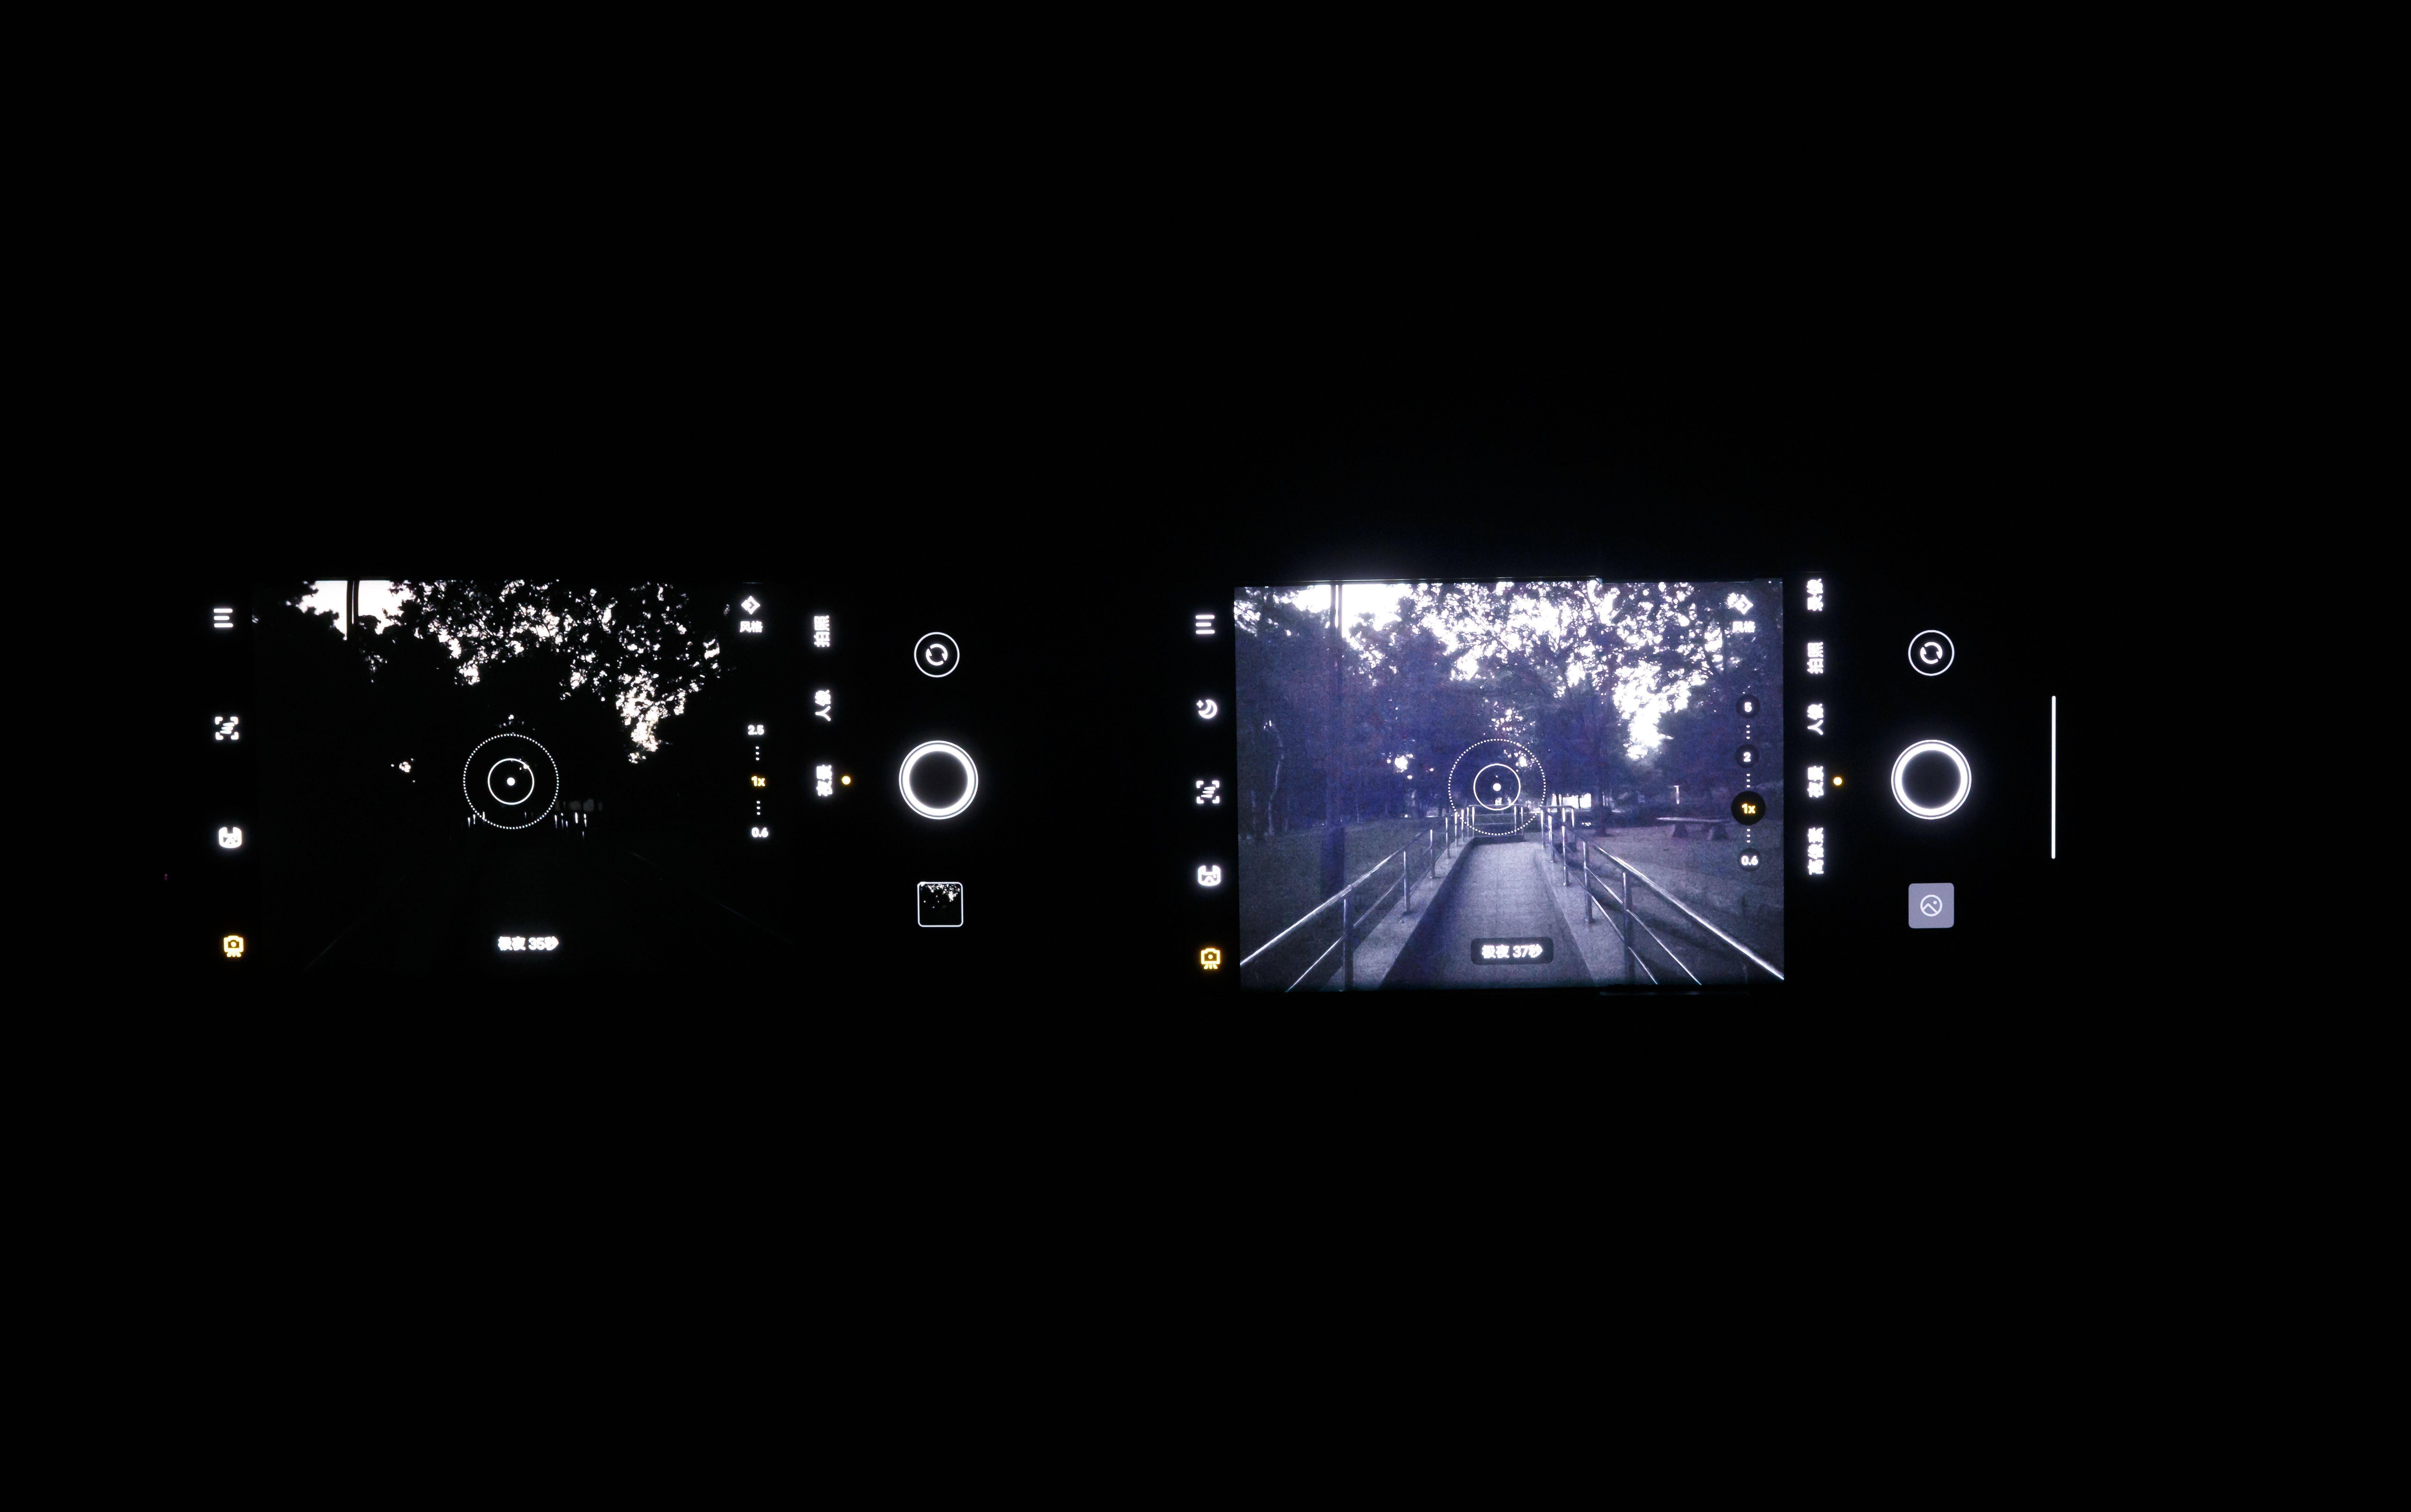 (左,其它手机拍摄预览界面;右,vivo x70 pro 拍摄预览界面)